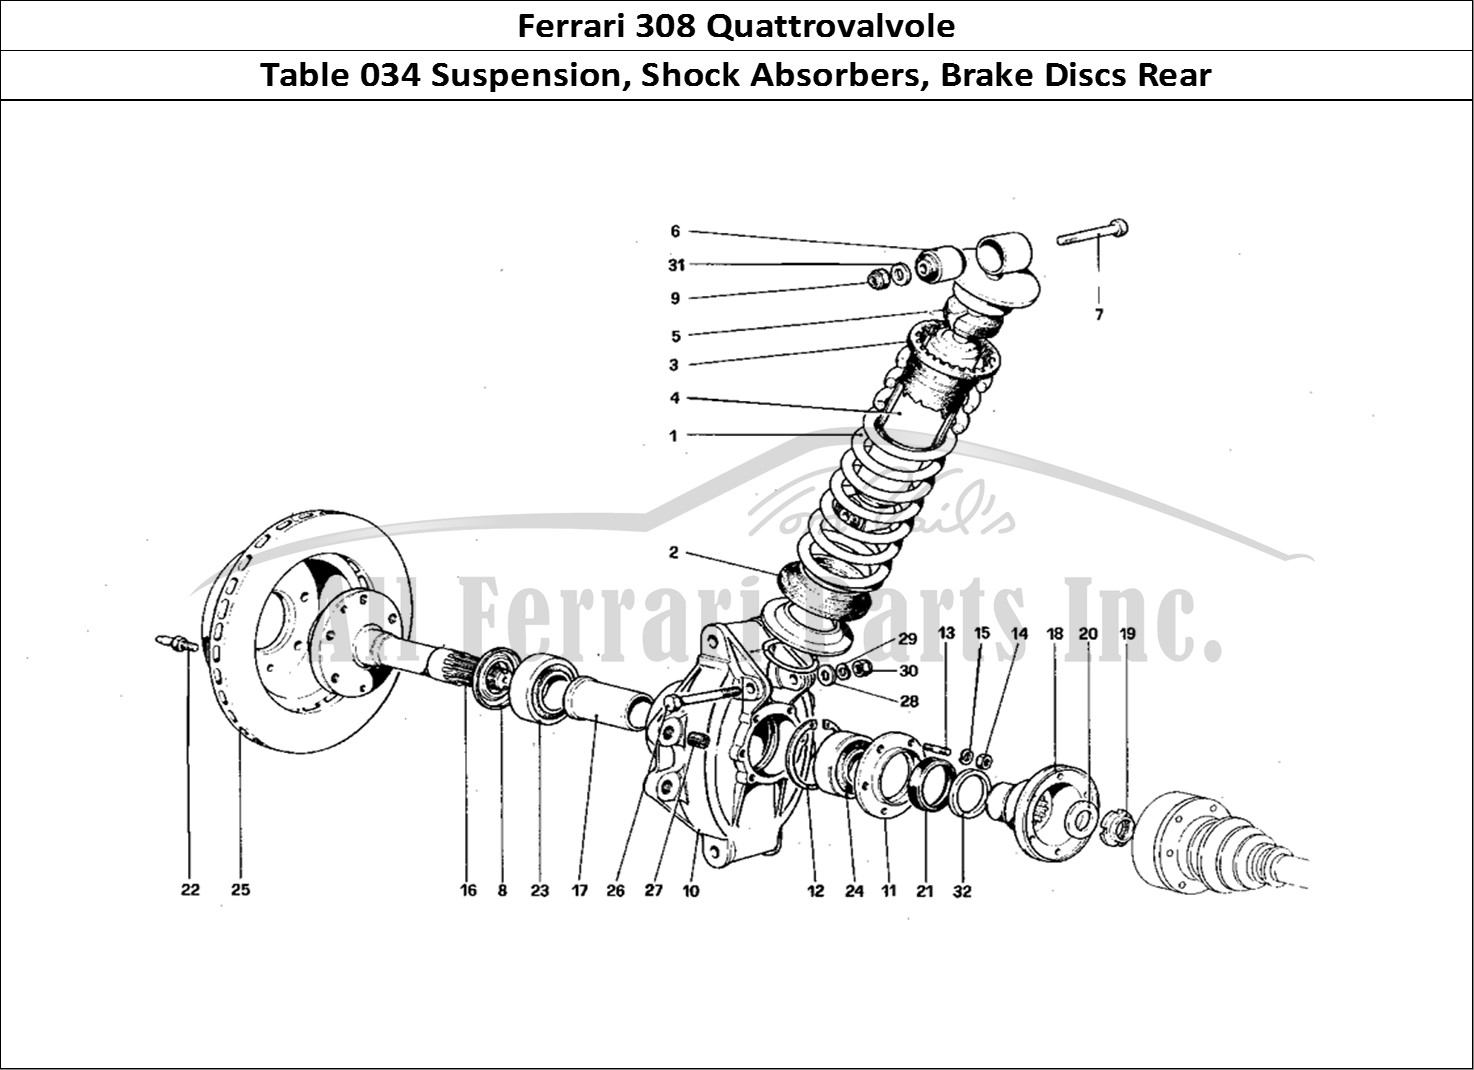 Ferrari Parts Ferrari 308 Quattrovalvole (1985) Page 034 Rear Suspension - Shock A